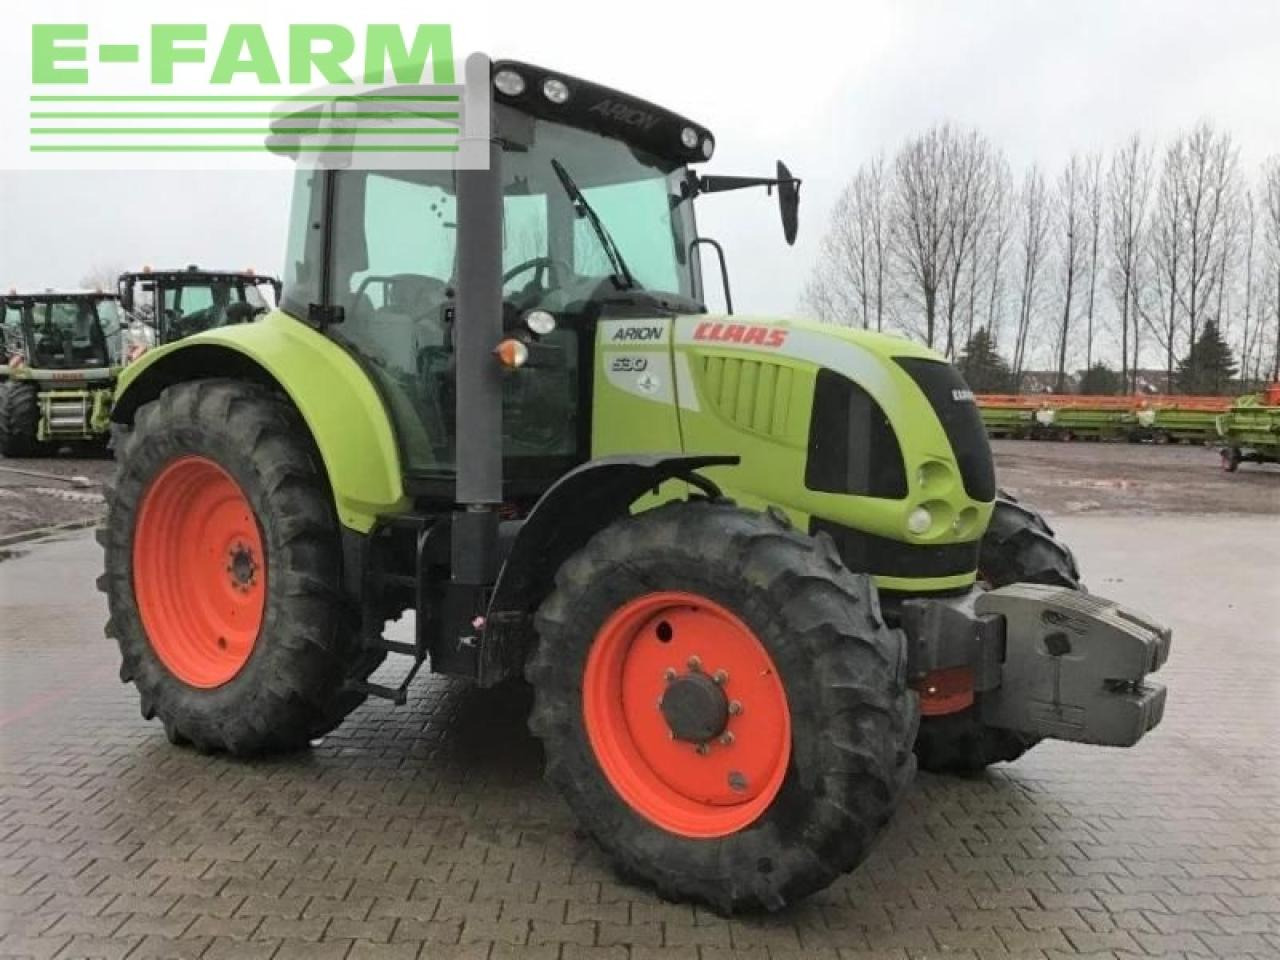 Farm tractor CLAAS arion 530 cis CIS